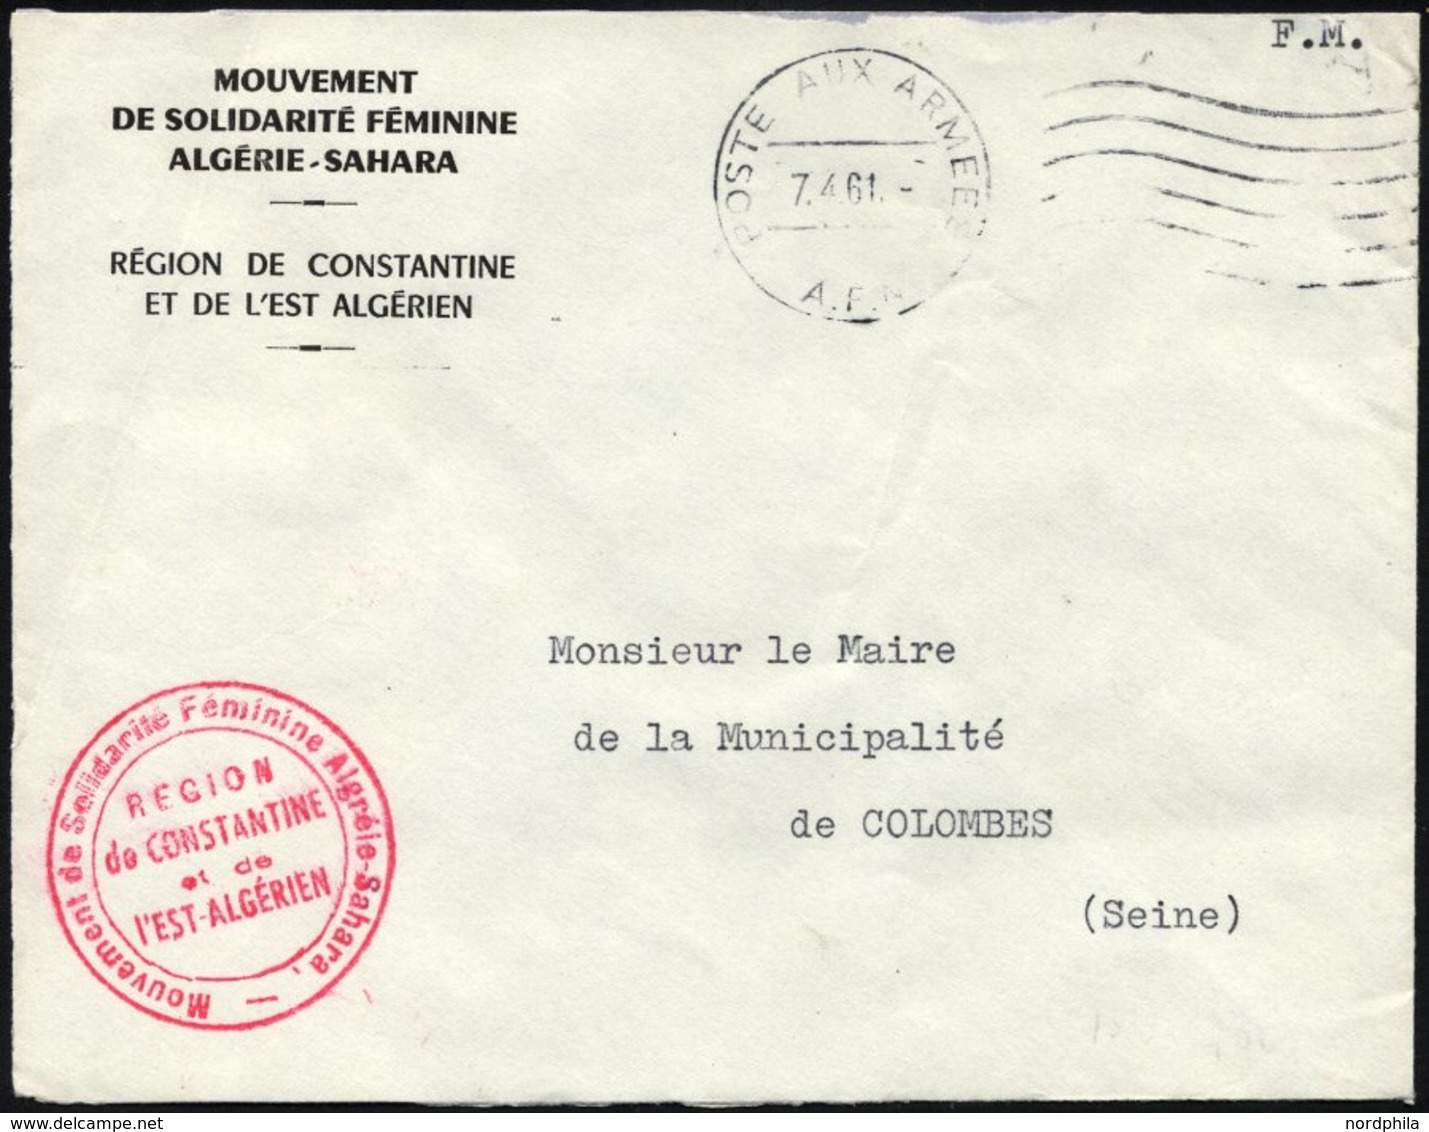 FRANKREICH FELDPOST 1961, K1 POSTE AUX ARMEES/A.F.N. Auf Armeebrief Der Frauensolidaritätsbewegung Der Sahara-Region Alg - Military Postmarks From 1900 (out Of Wars Periods)